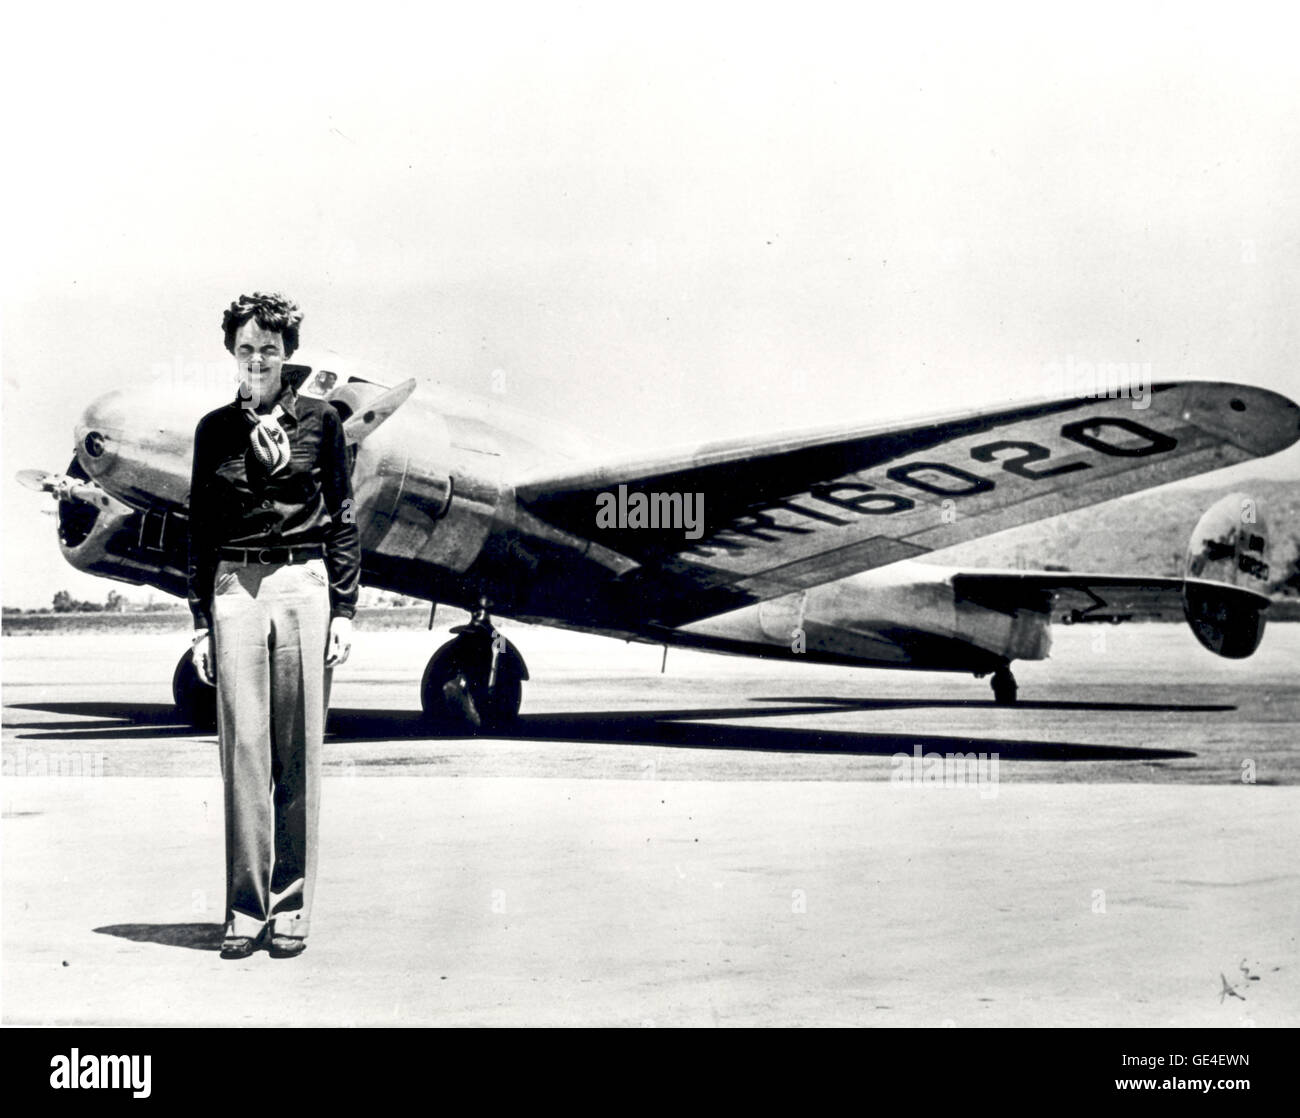 (Sconosciuto) Amelia Earhart in piedi nella parte anteriore del Lockheed Electra in cui ella è scomparso nel luglio 1937. Nato a Atchison, Kansas nel 1897, Amelia Earhart non iniziare a volare fino a dopo il suo trasferimento in California nel 1920. Dopo aver preso lezioni da pioniere dell'aviazione Neta Snook in un Curtiss Jenny, Earhart stabiliti a rompere i record di volo, rompendo le donne record di altitudine nel 1922. Earhart continuamente promossa donne in aviazione e nel 1928 è stato invitato per essere la prima donna a volare attraverso l'Atlantico. Che accompagna i piloti di Wilmer Stultz e Louis Gordon come un passeggero a bordo del Fokker Friendship, Earhart Foto Stock